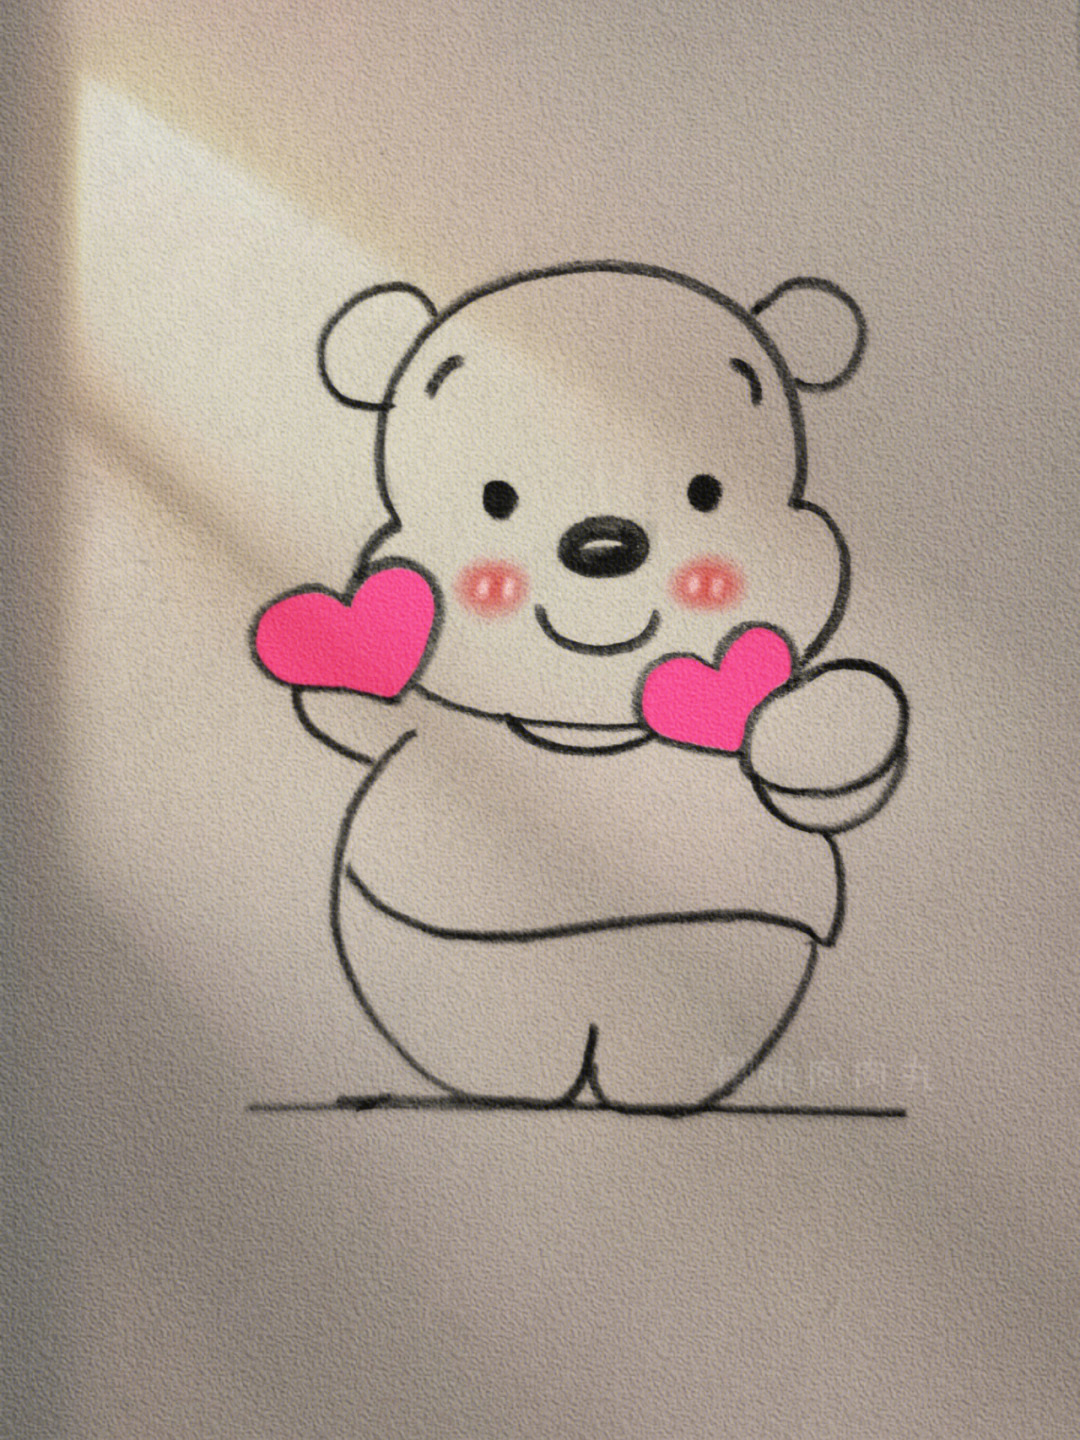 画一只小熊 简笔画图片